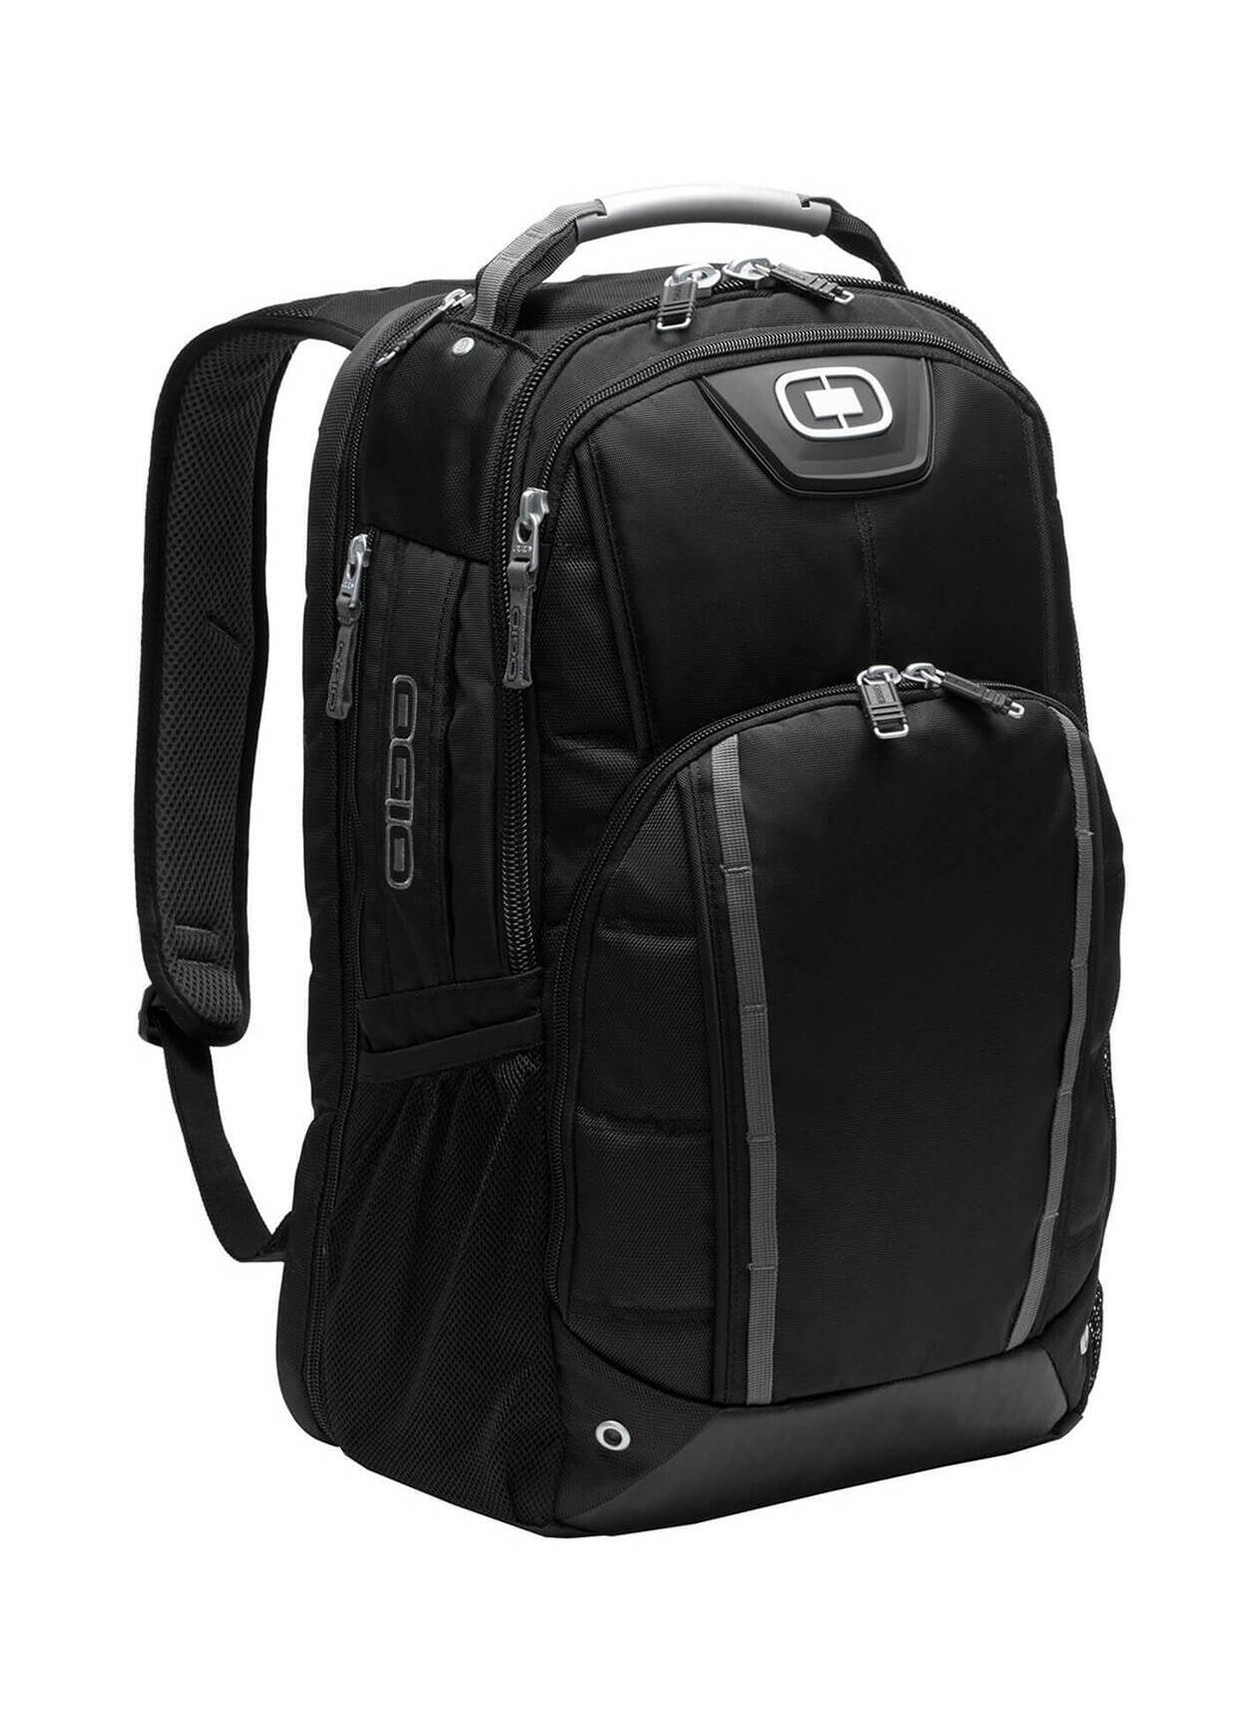 OGIO Black Bolt Backpack